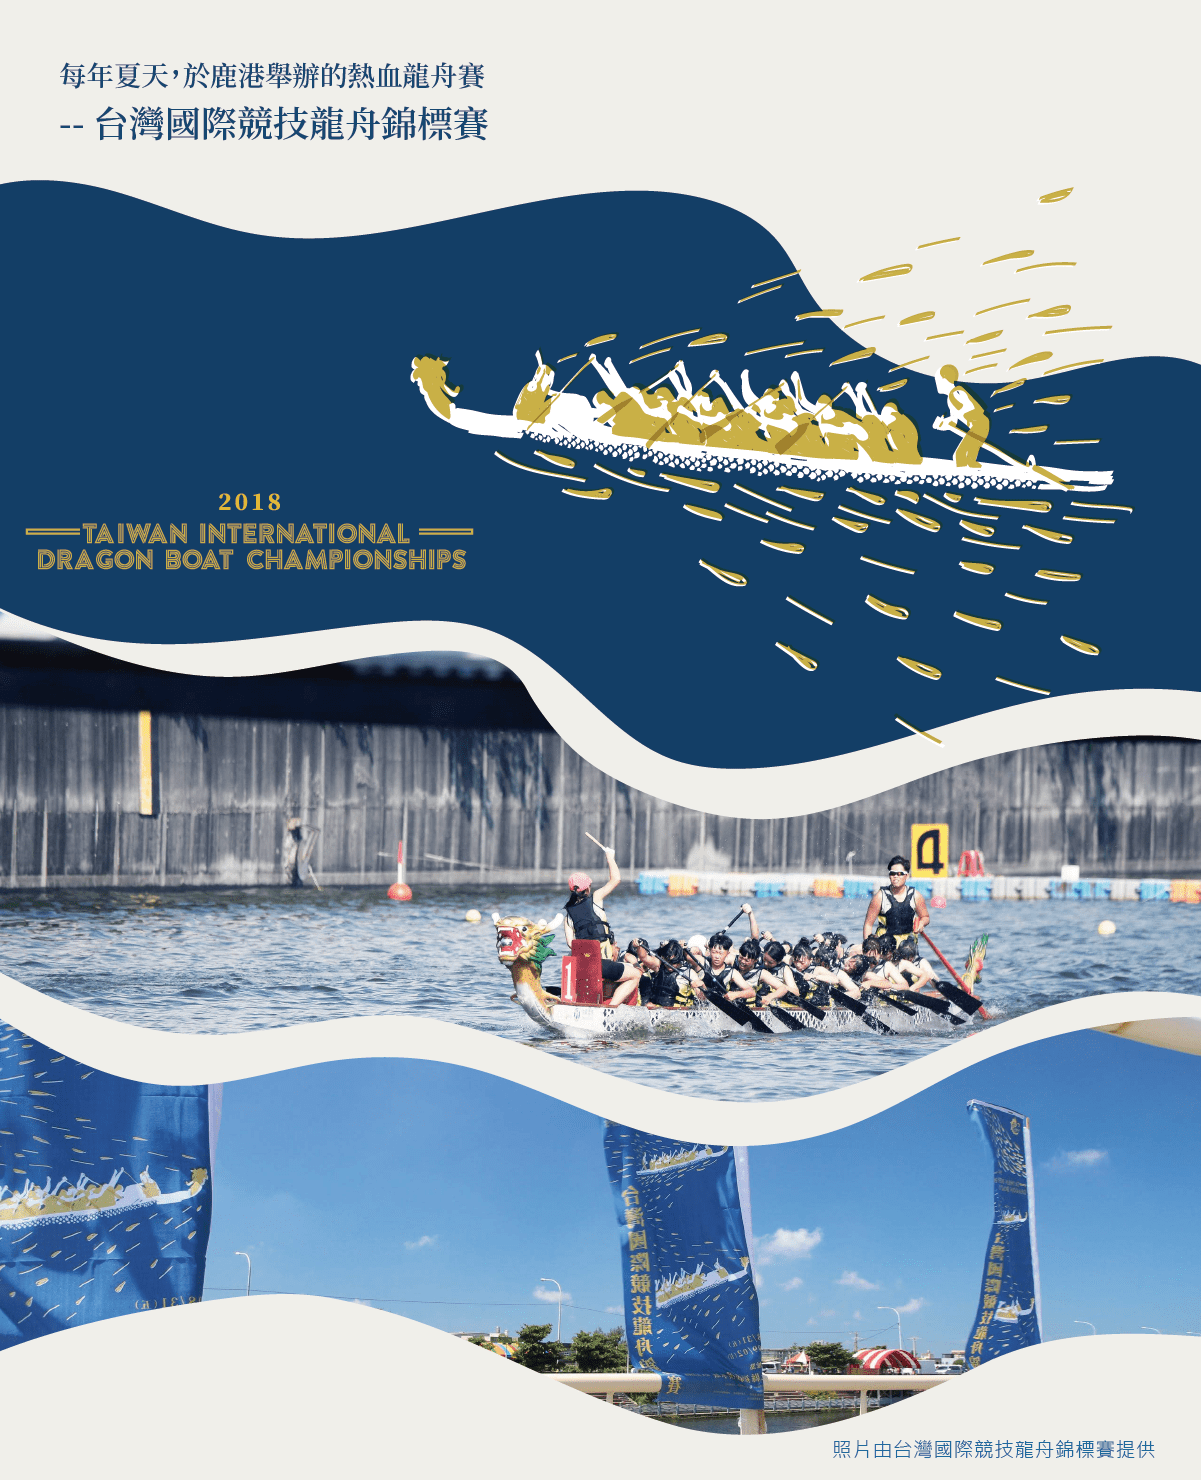 每年夏天，於鹿港舉辦的熱後龍舟賽 - 台灣國際競技龍舟錦標賽，很多人一起滑龍舟，有人打鼓有人划槳有人掌舵